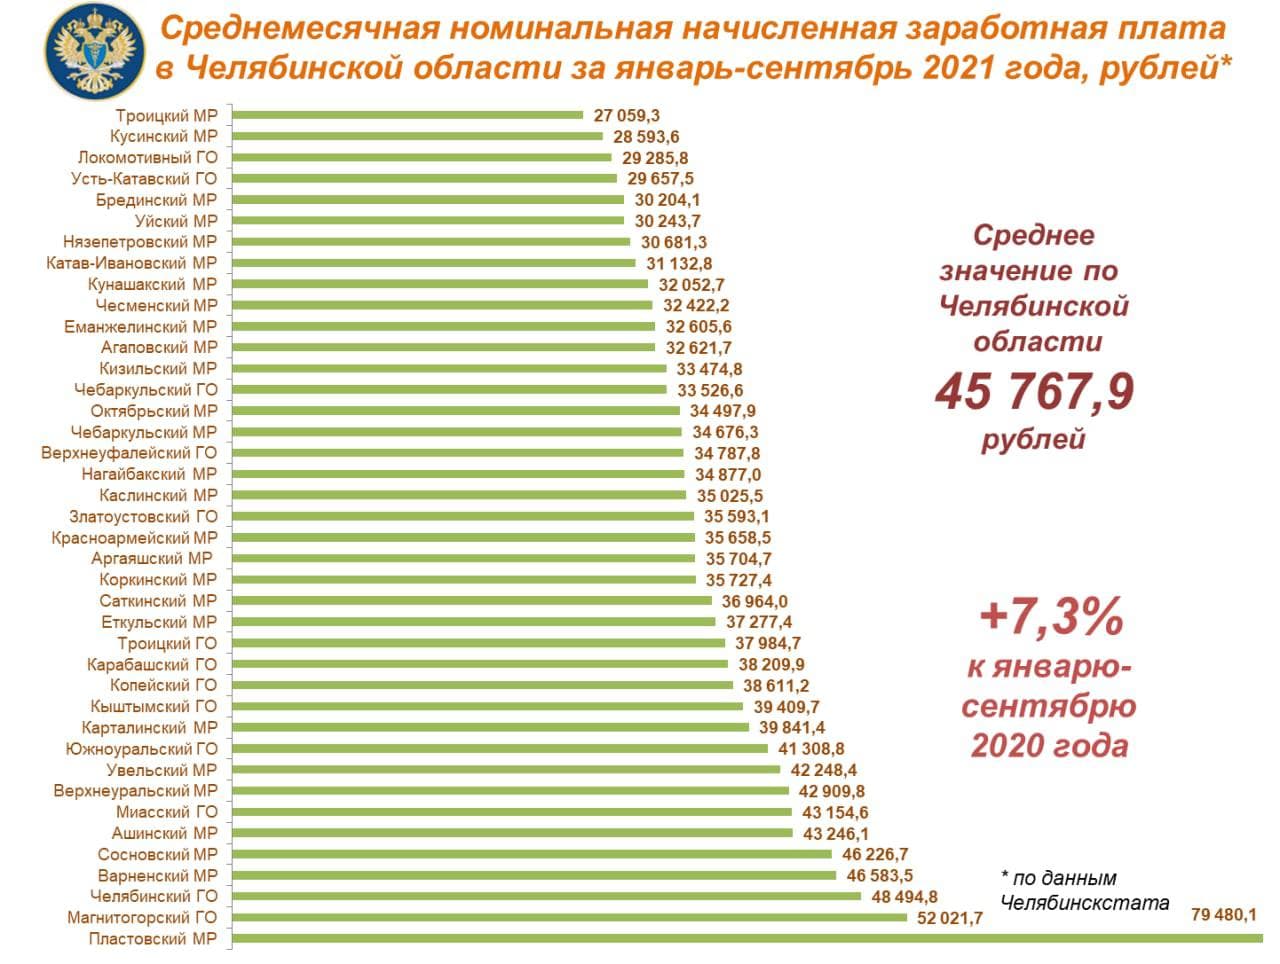 Аналитики рассказали, в каких городах самые высокие зарплаты в Челябинской области